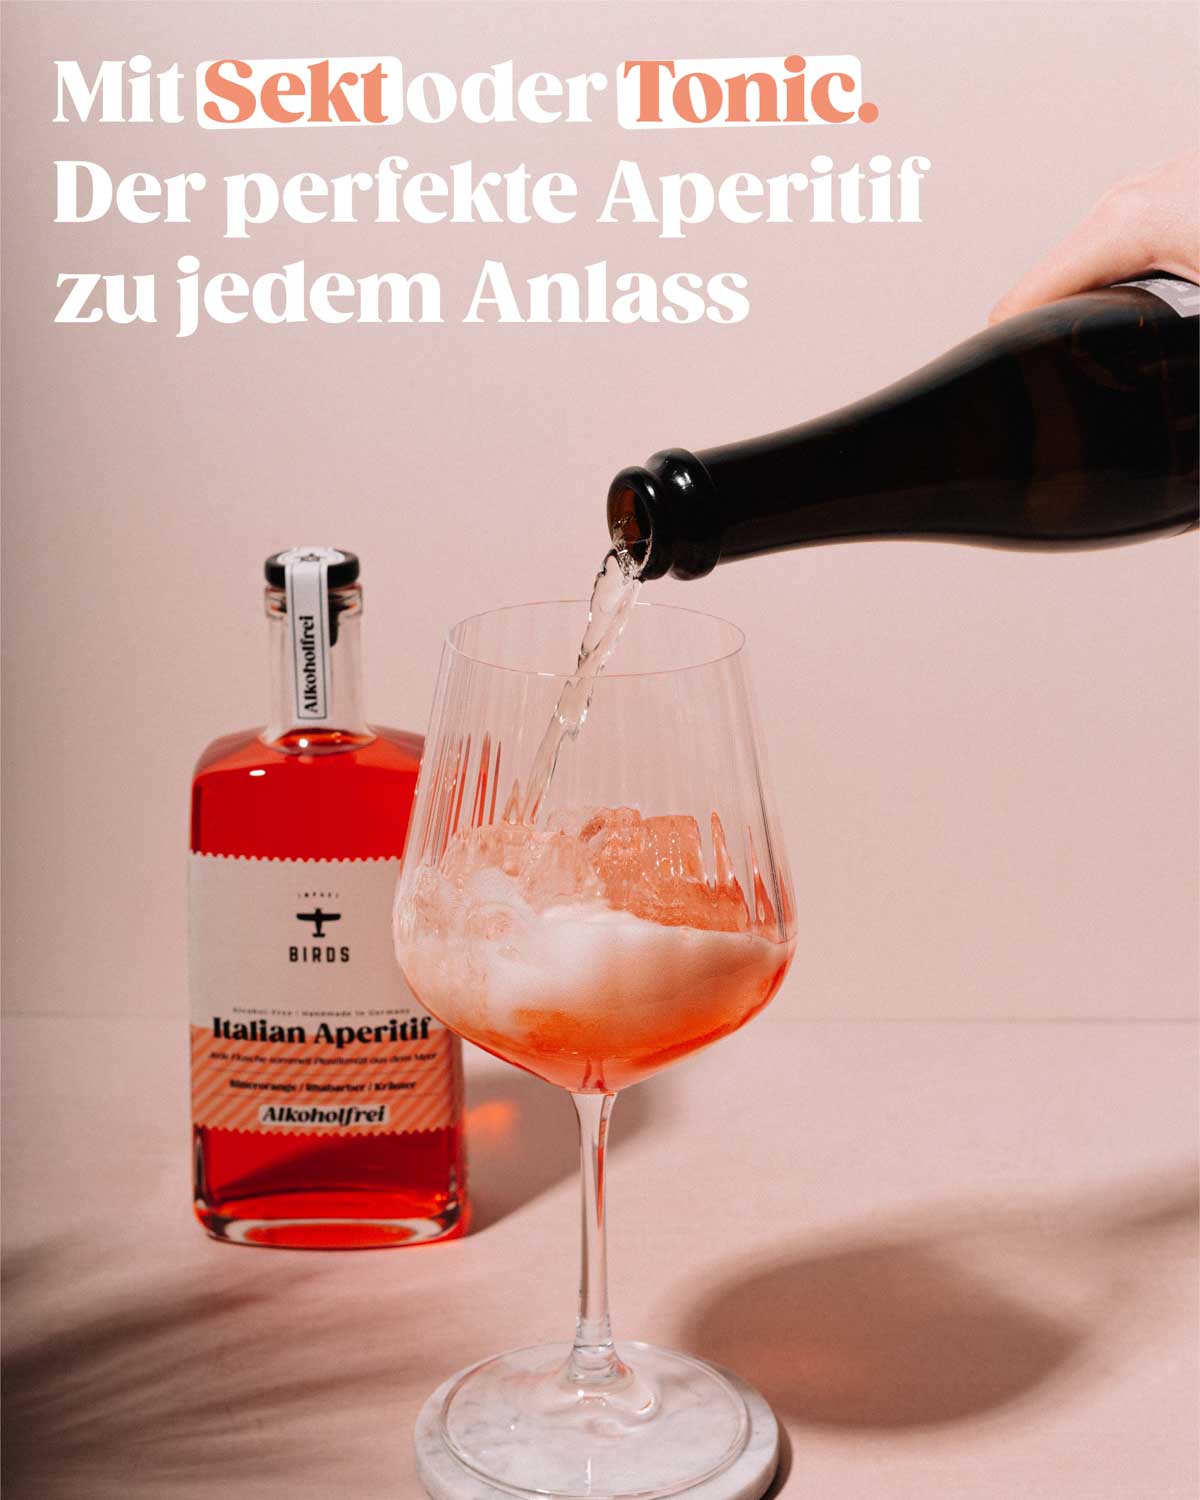 Unser Italian Aperitif Alkoholfrei mit Sekt oder Tonic macht ihn zum perfekten  Drink für jeden Anlass. 